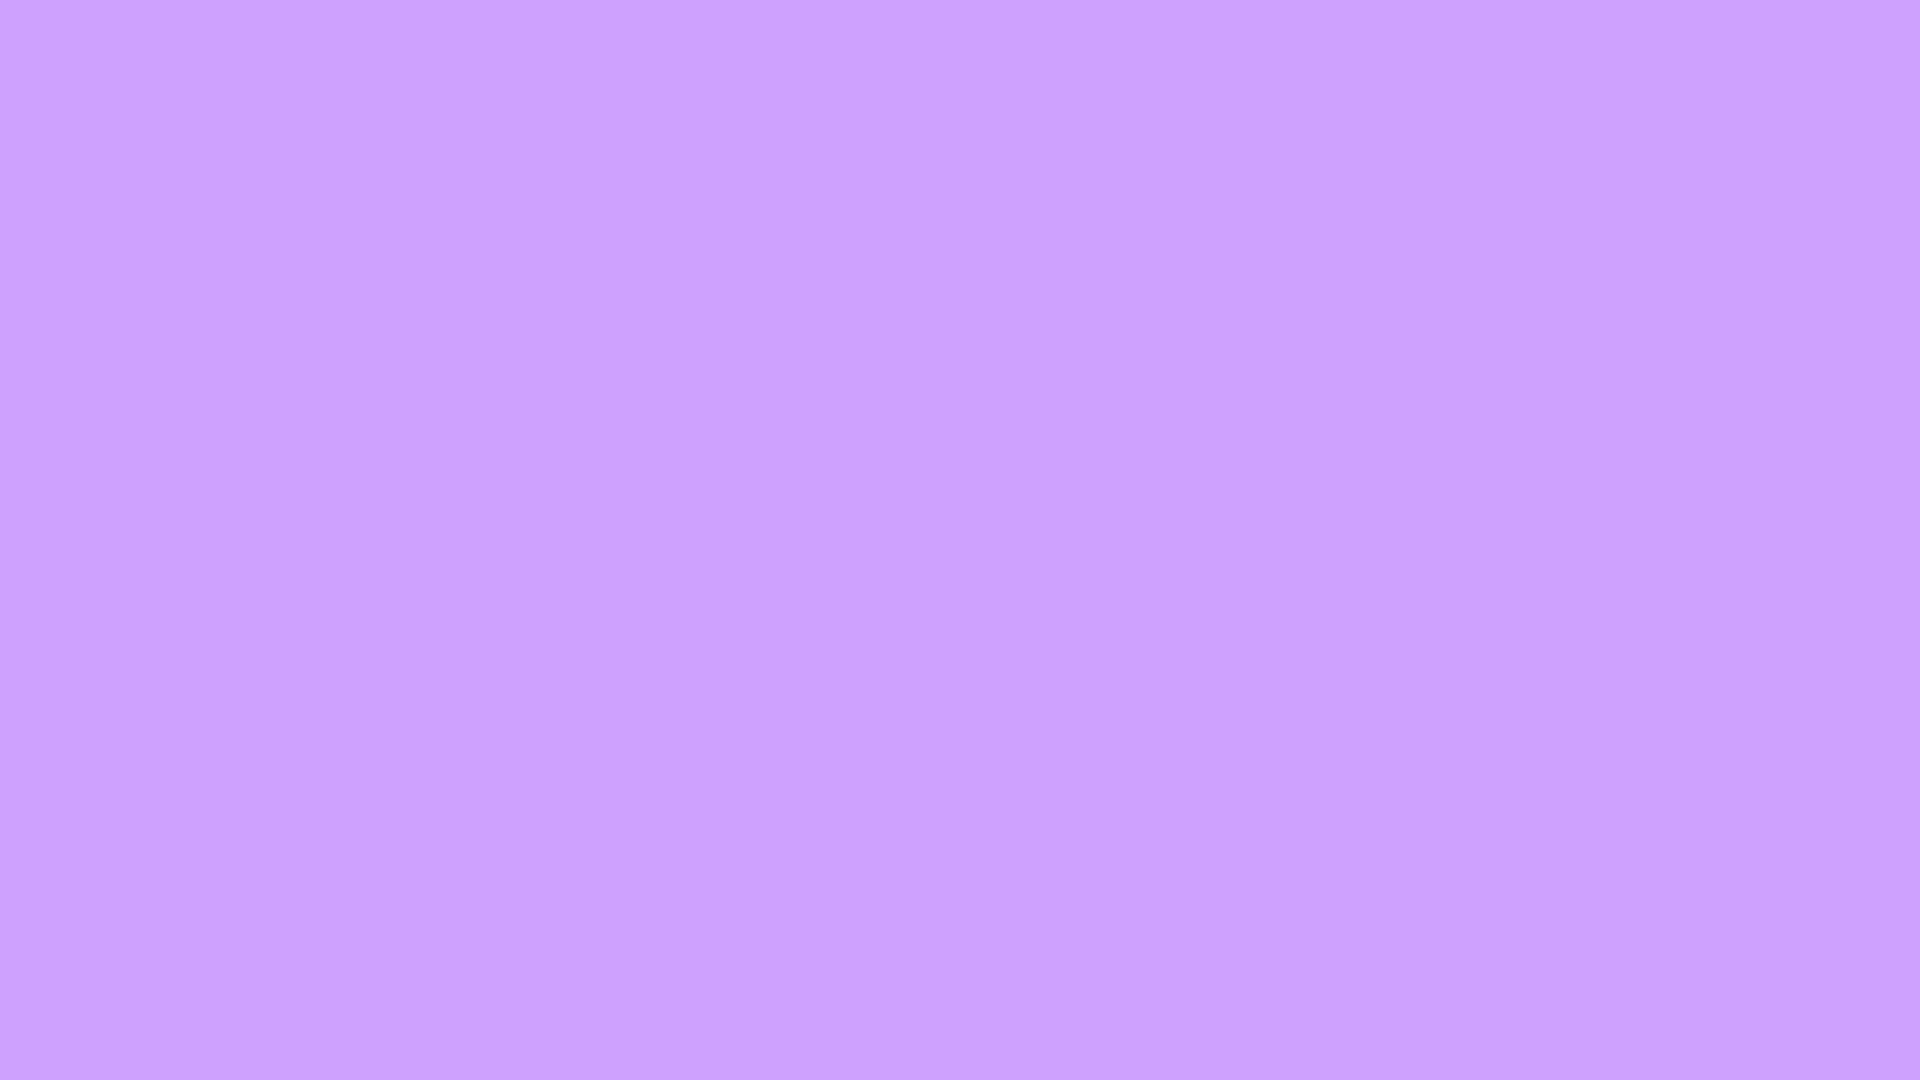 Minimalist Pastel Violet Background